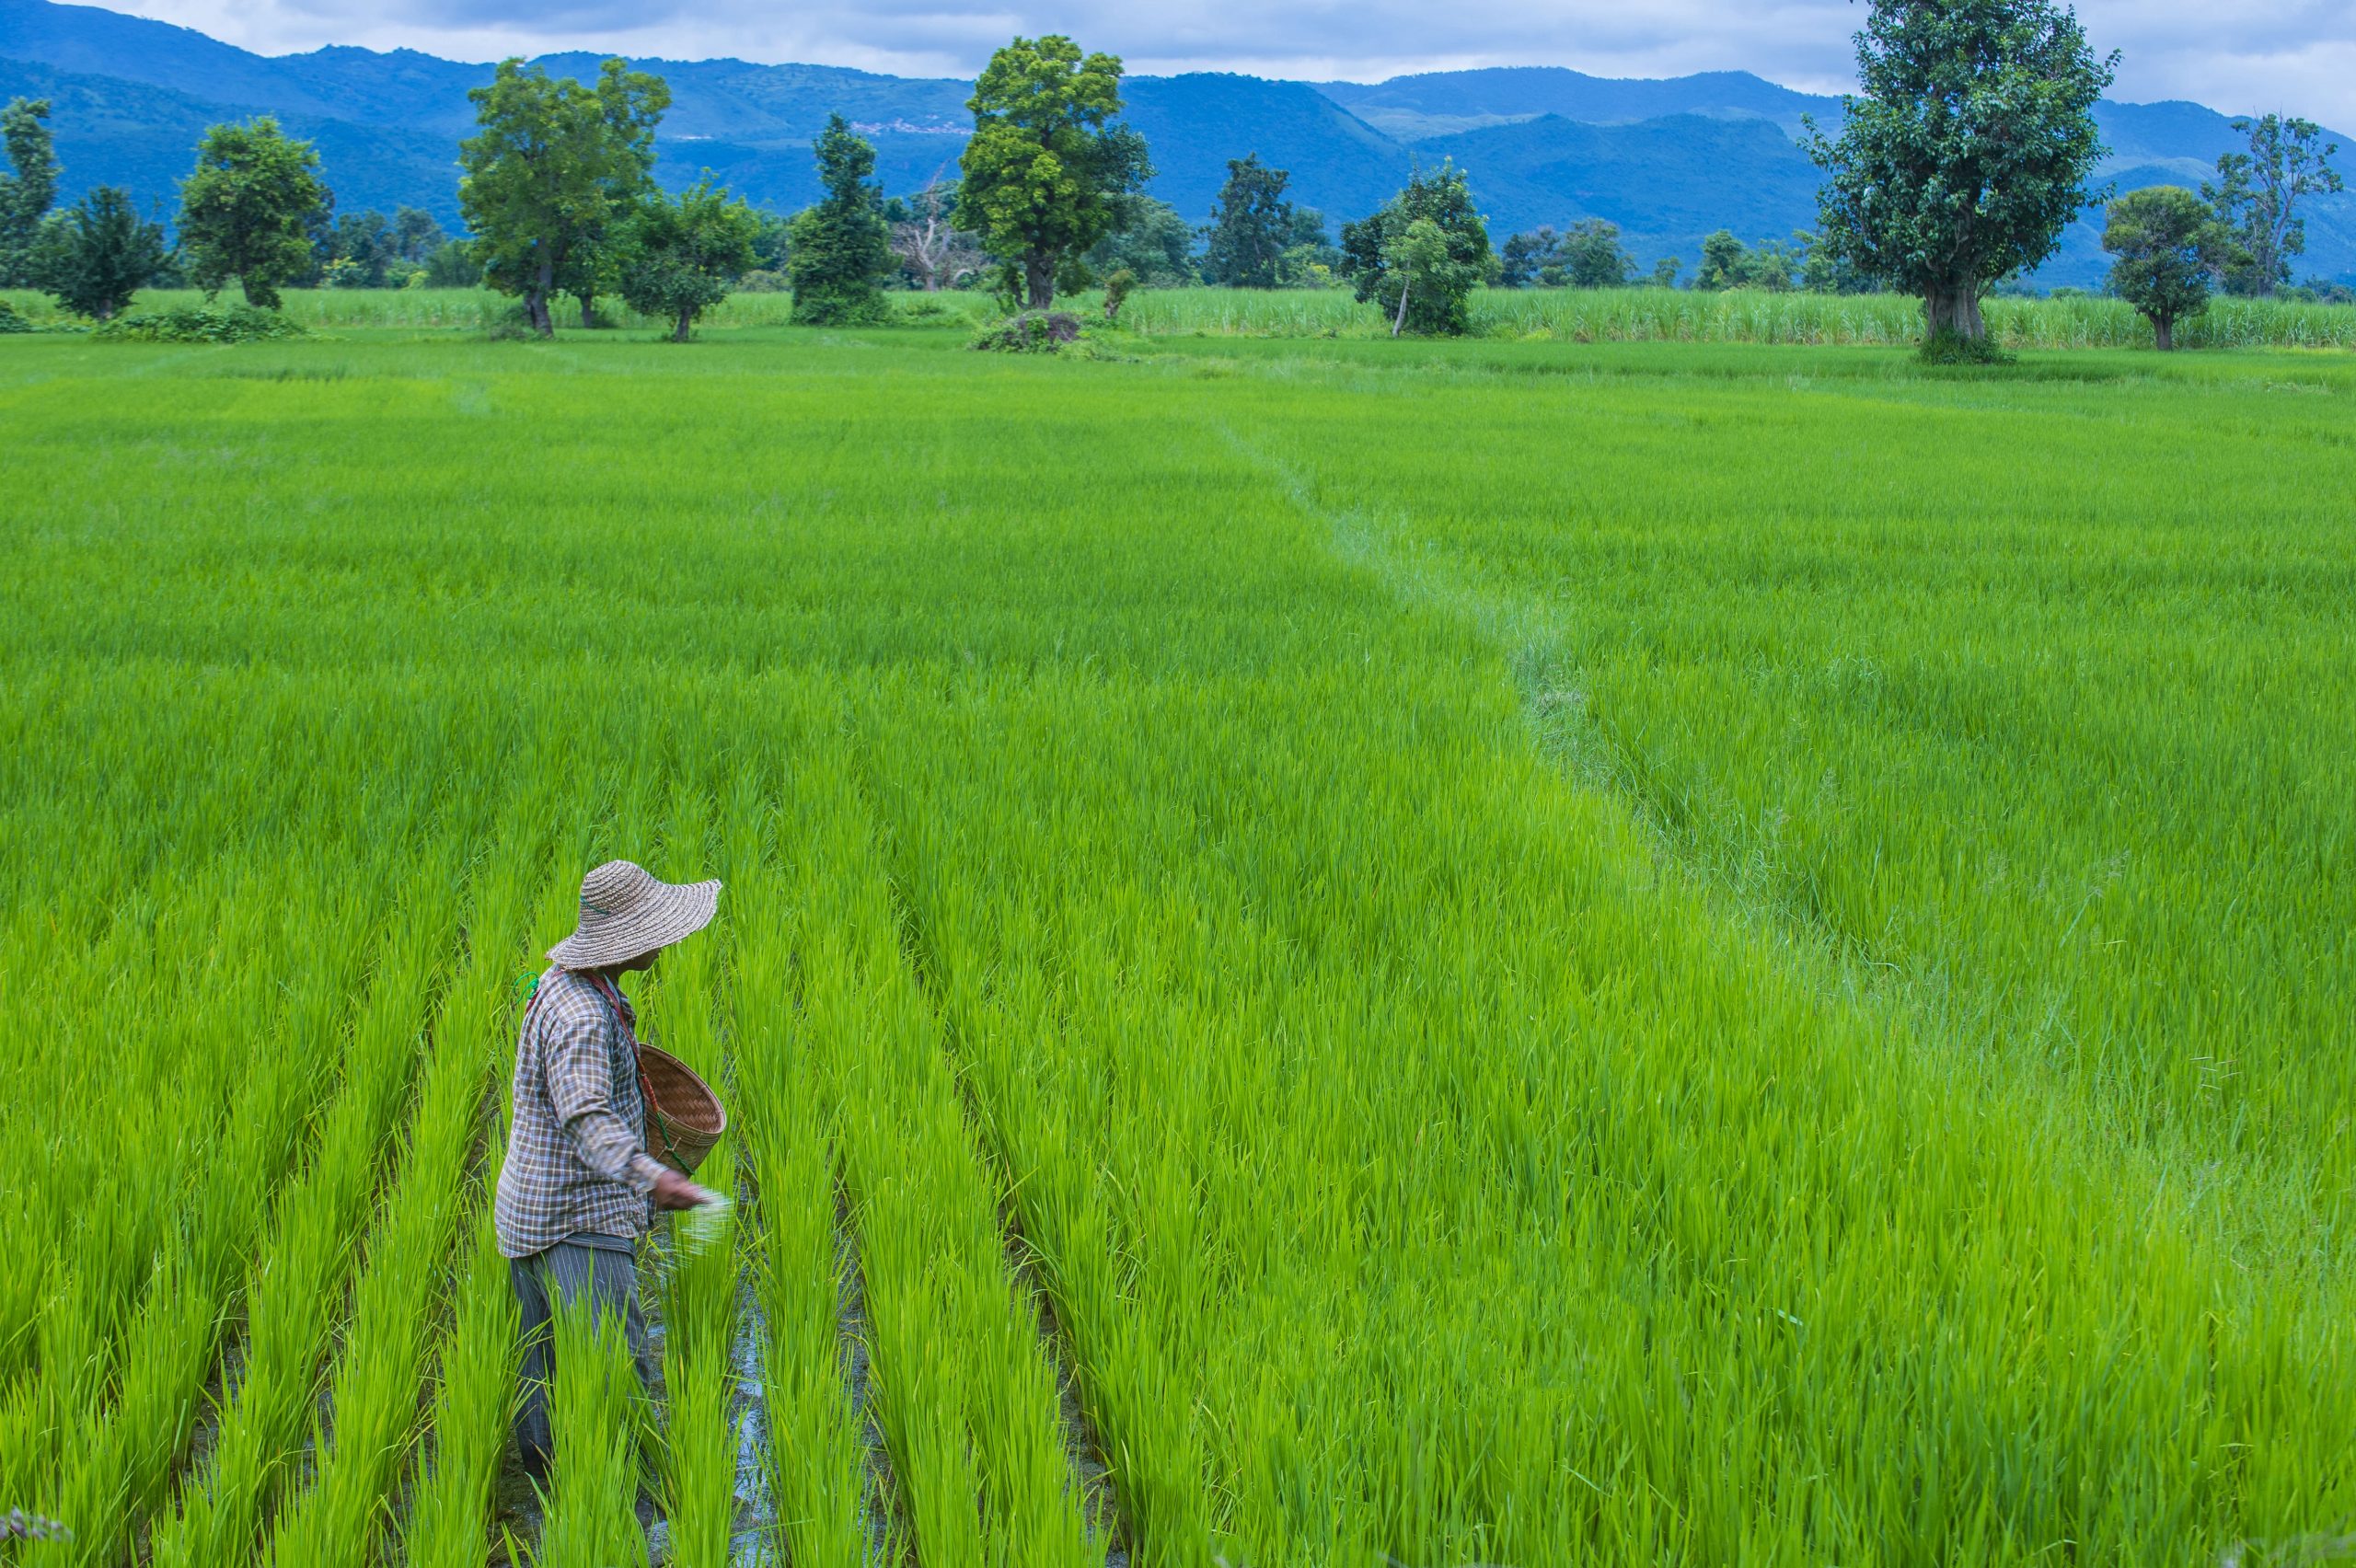 Myanmar farmer in field